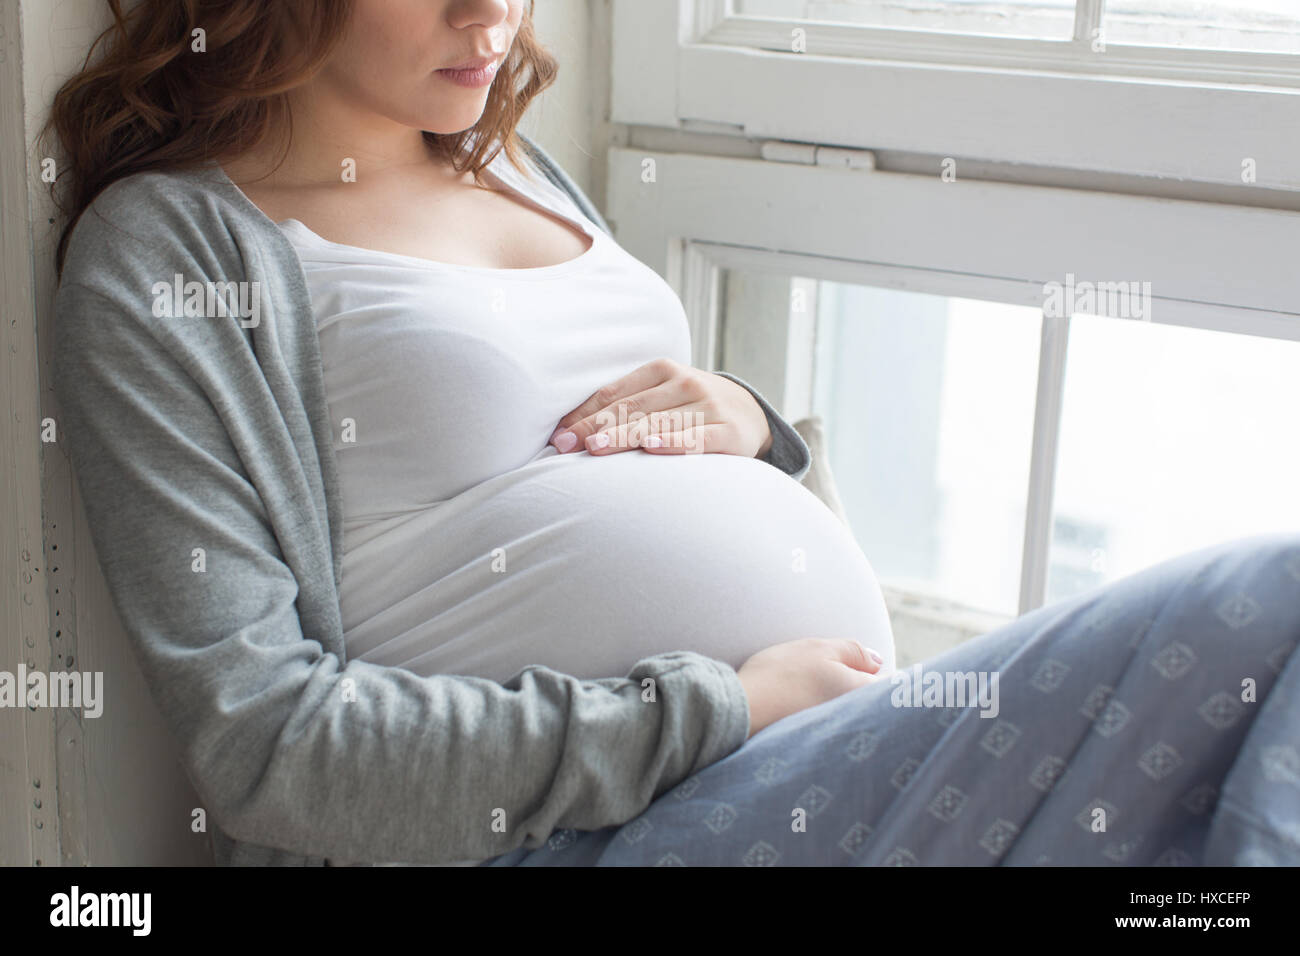 Le ventre de femme enceinte sur le rebord Banque D'Images